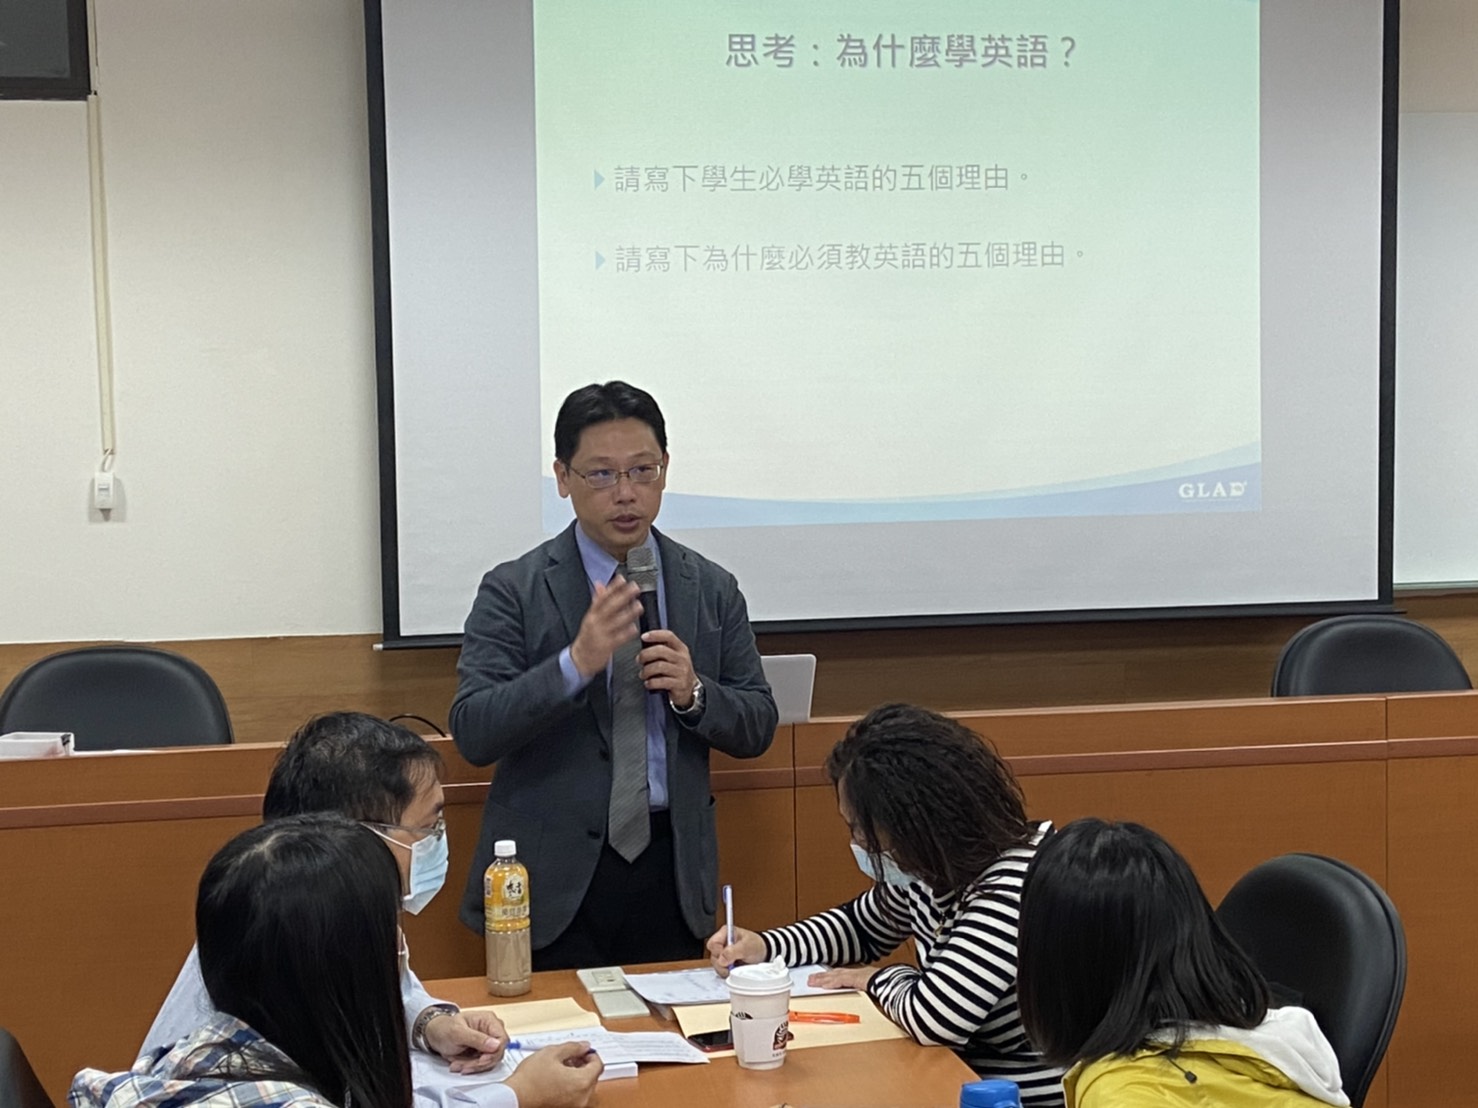 文化大學袁宇熙教授說明雙語教學知能發展，並引導教師思考雙語教學的理由